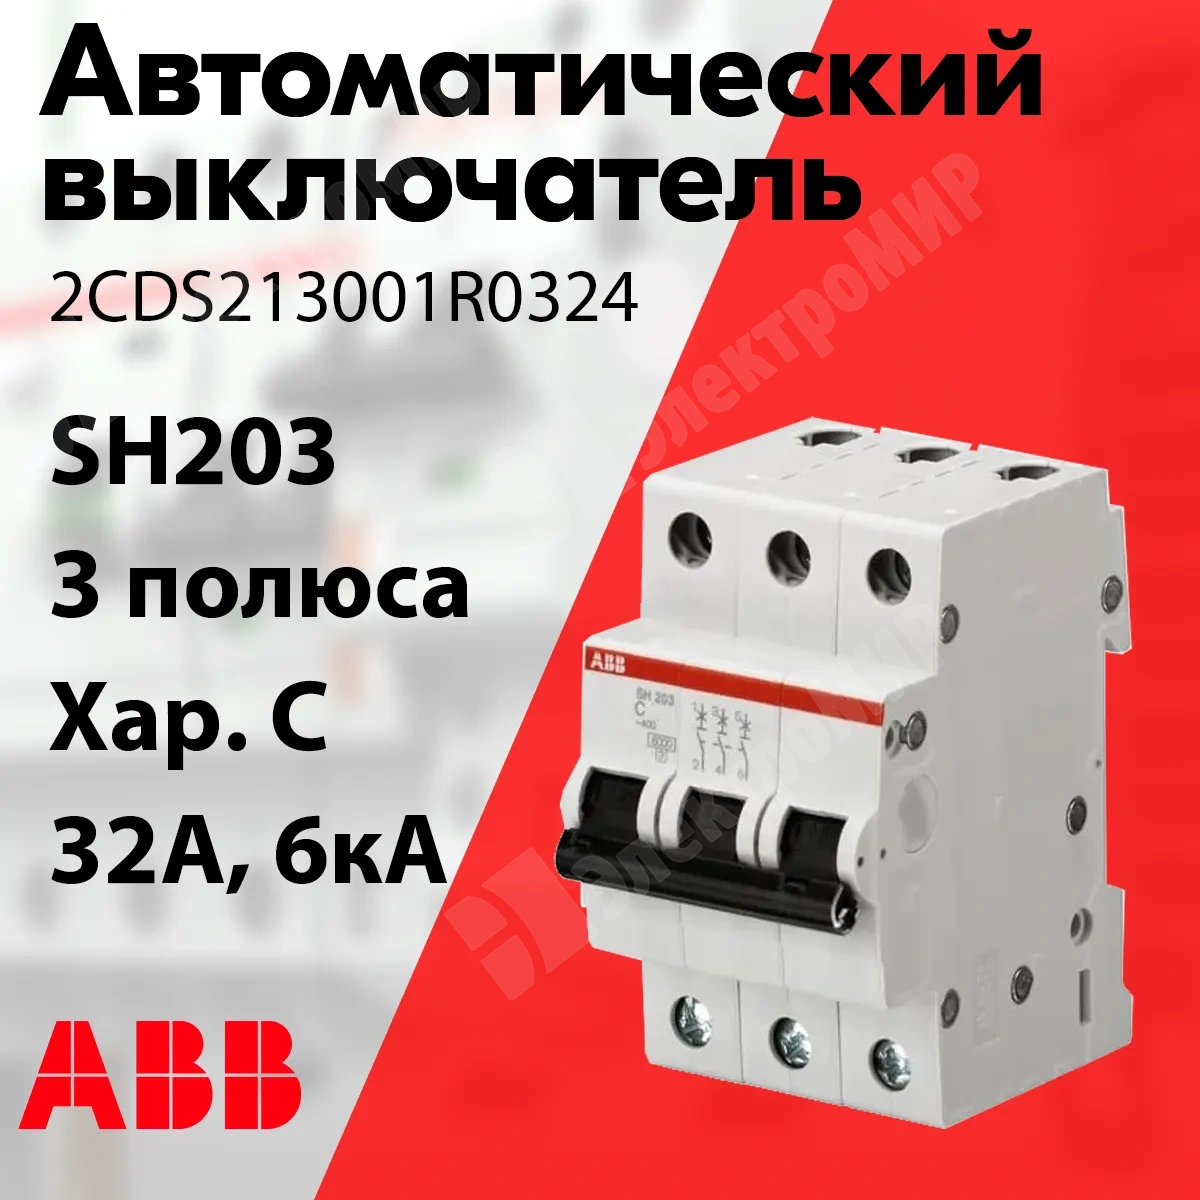 Изображение 2CDS213001R0324 | Автоматический выключатель 3-пол. 32А тип C 6кА серия SH203 2CDS213001R0324 ABB в магазине ЭлектроМИР